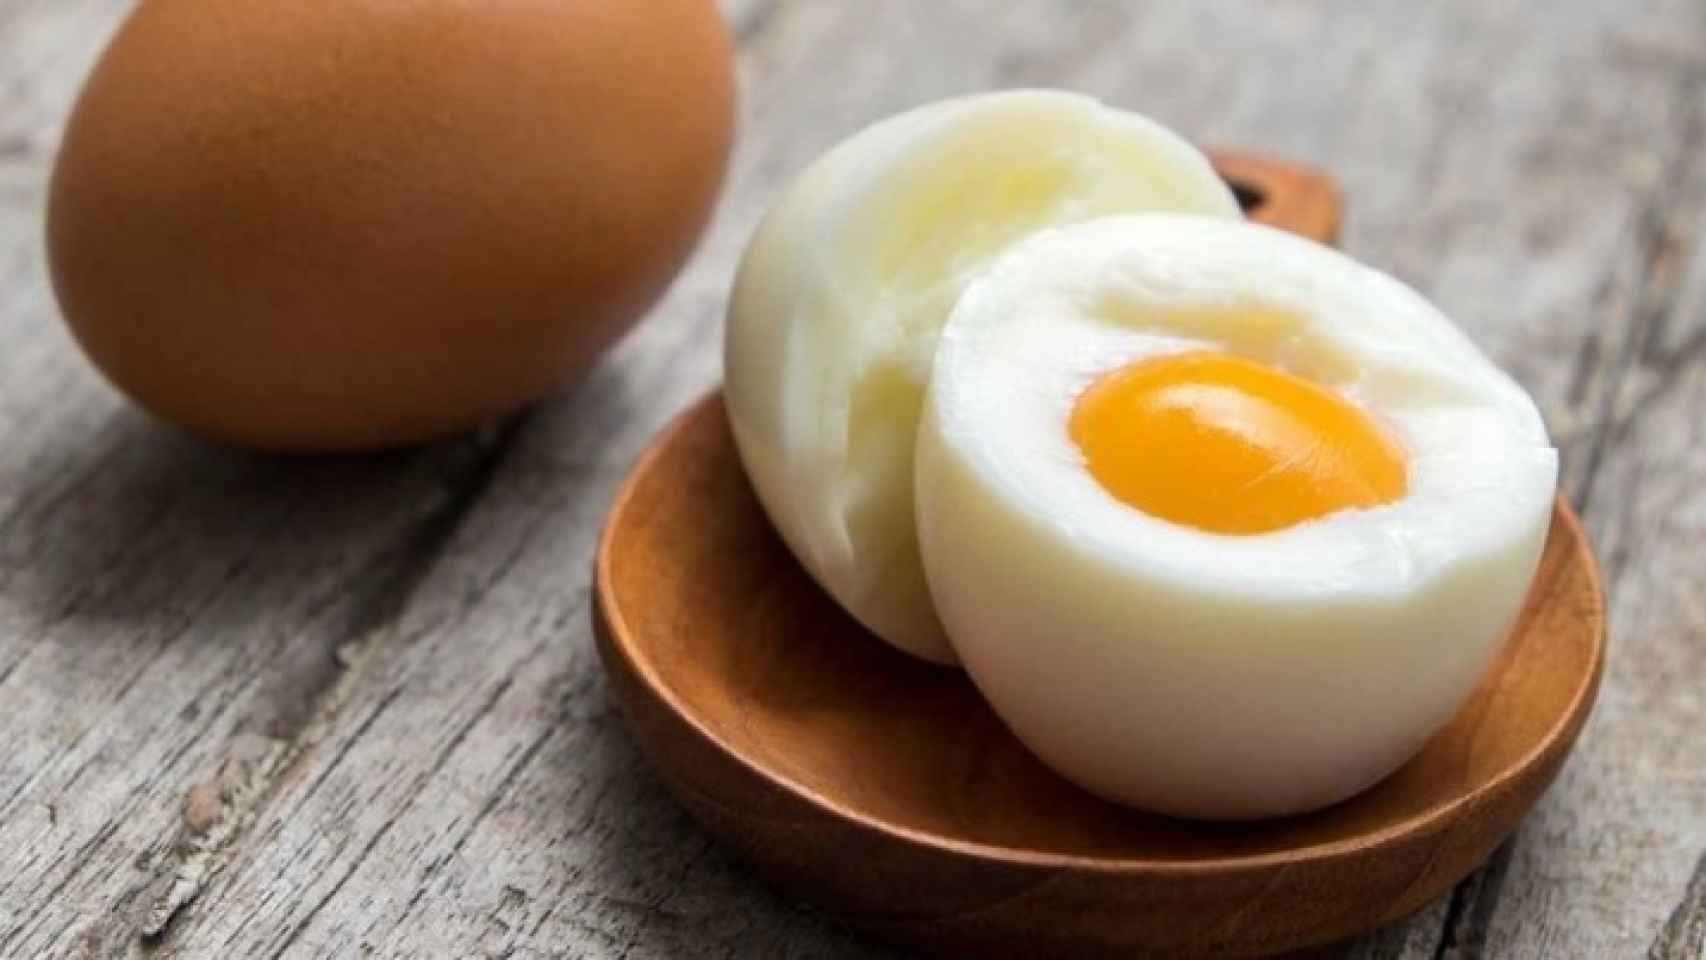 Un huevo cocido contiene alrededor de 200 miligramos de colesterol.